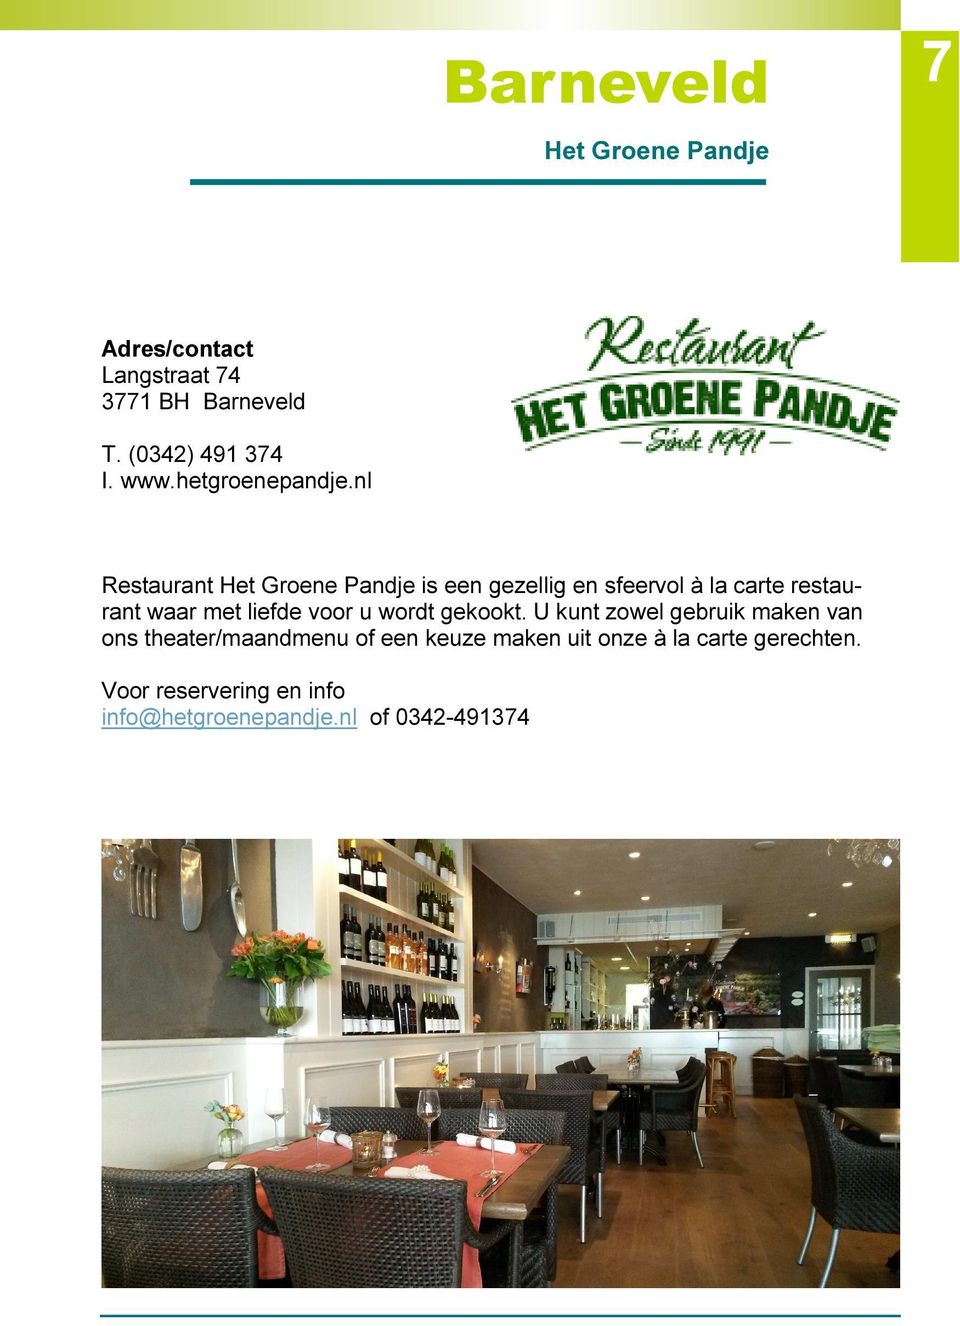 nl Restaurant Het Groene Pandje is een gezellig en sfeervol à la carte restaurant waar met liefde